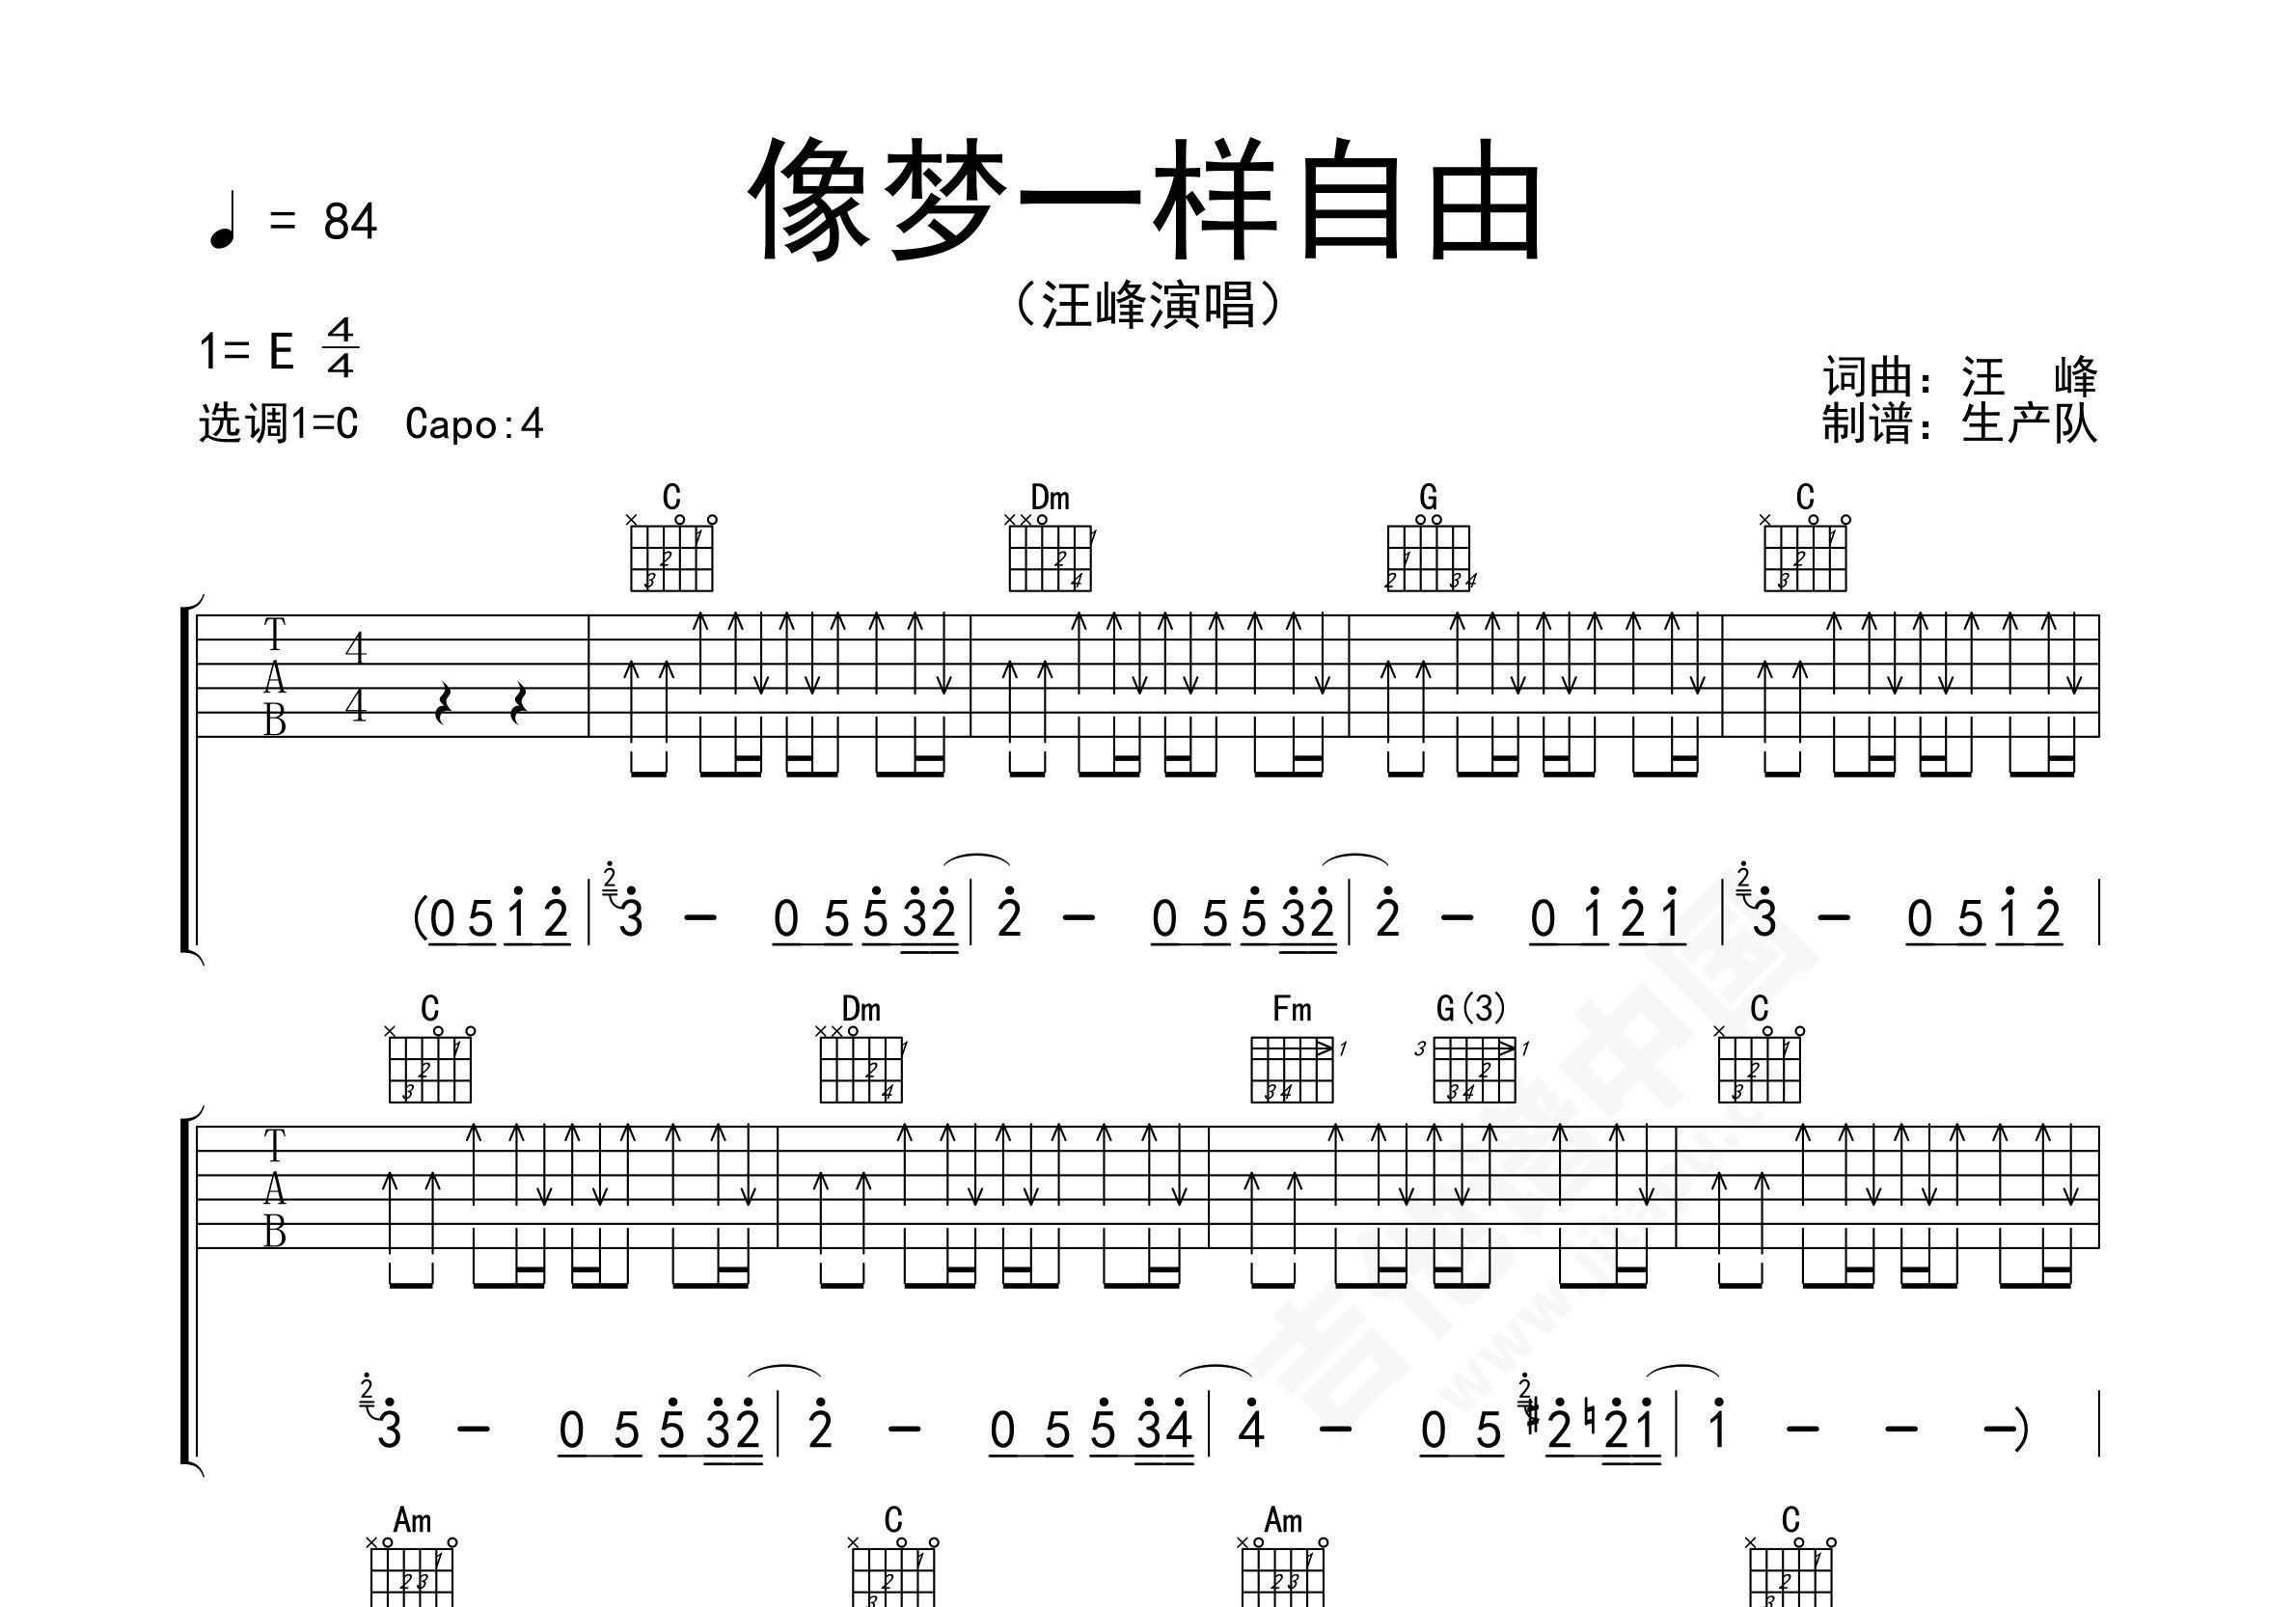 汪峰《像梦一样自由》吉他谱及教学视频[88]爱德文吉他 - 热门吉他谱教学视频 - 吉他之家